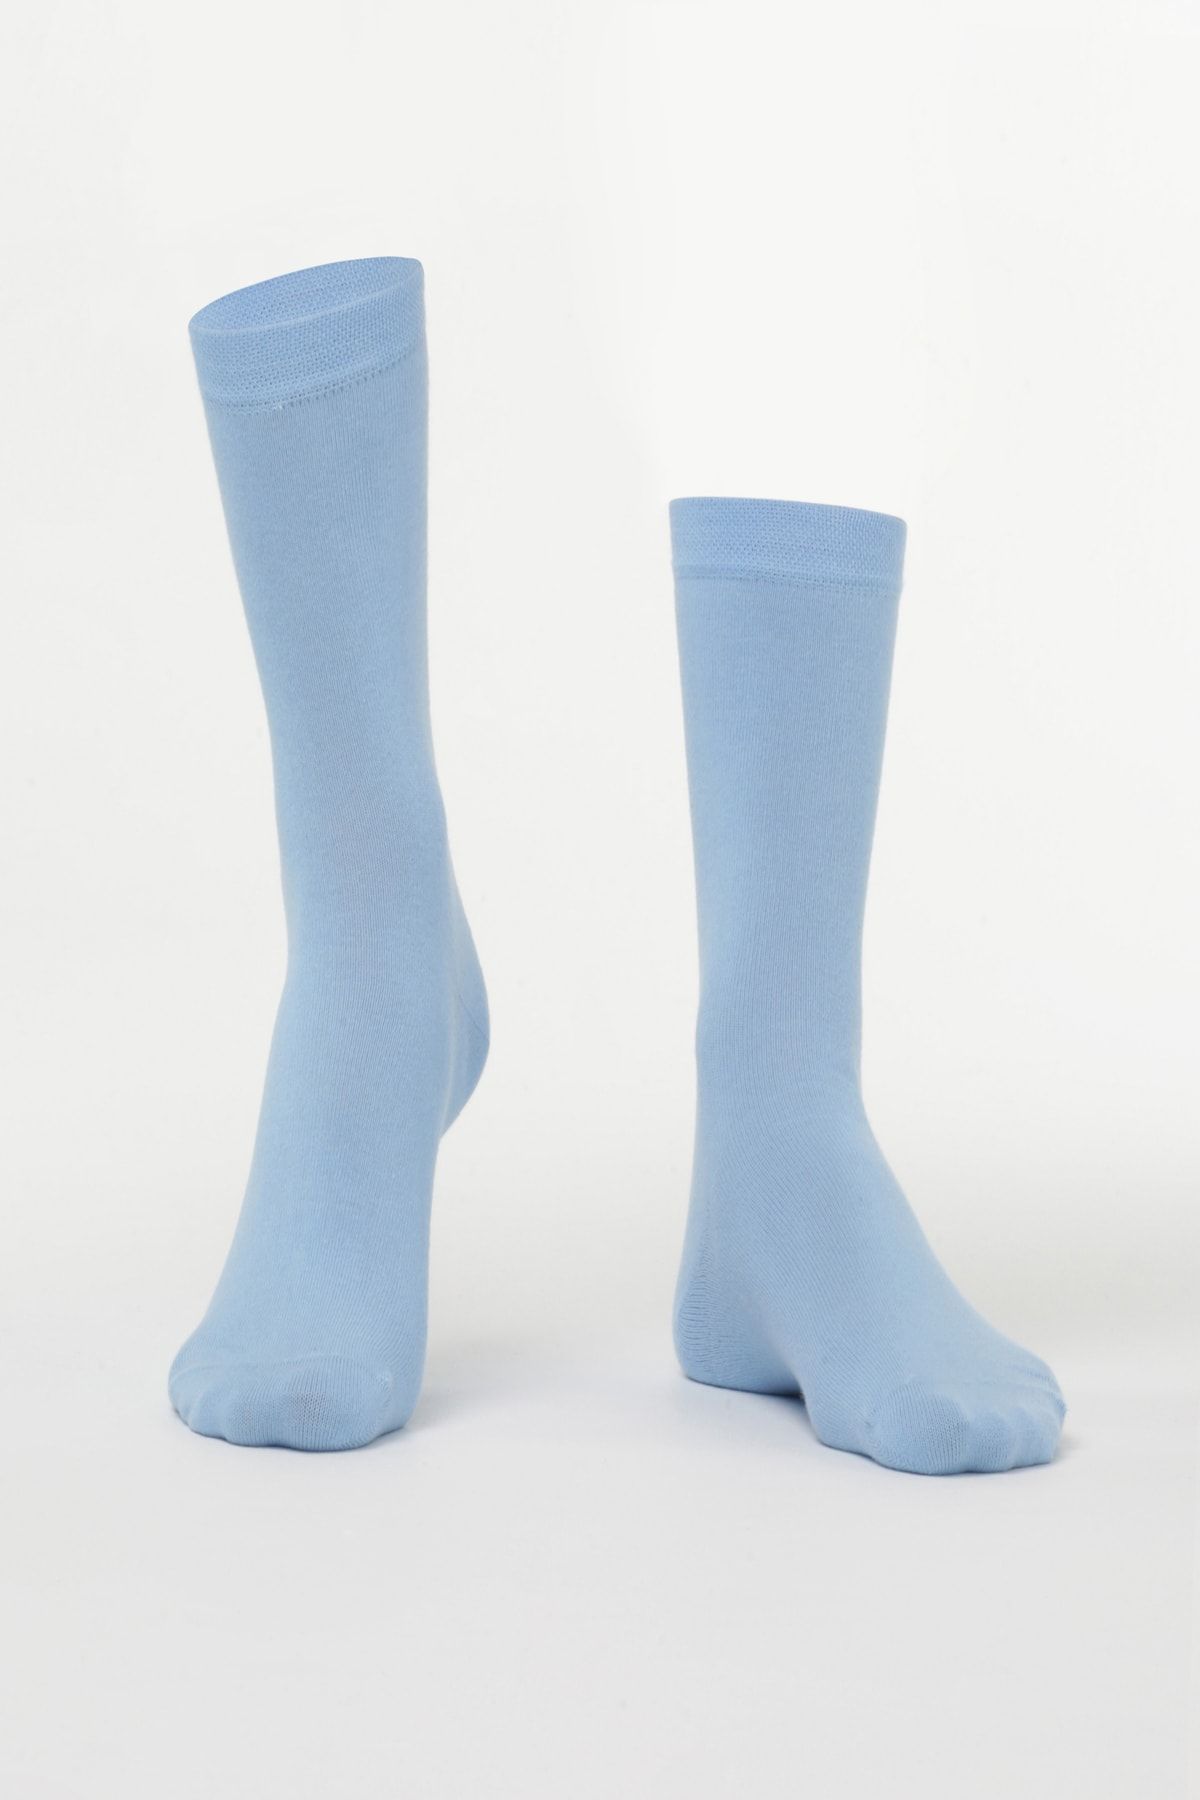 Özgür Çoraplar Kadın Açık Mavi Çorap